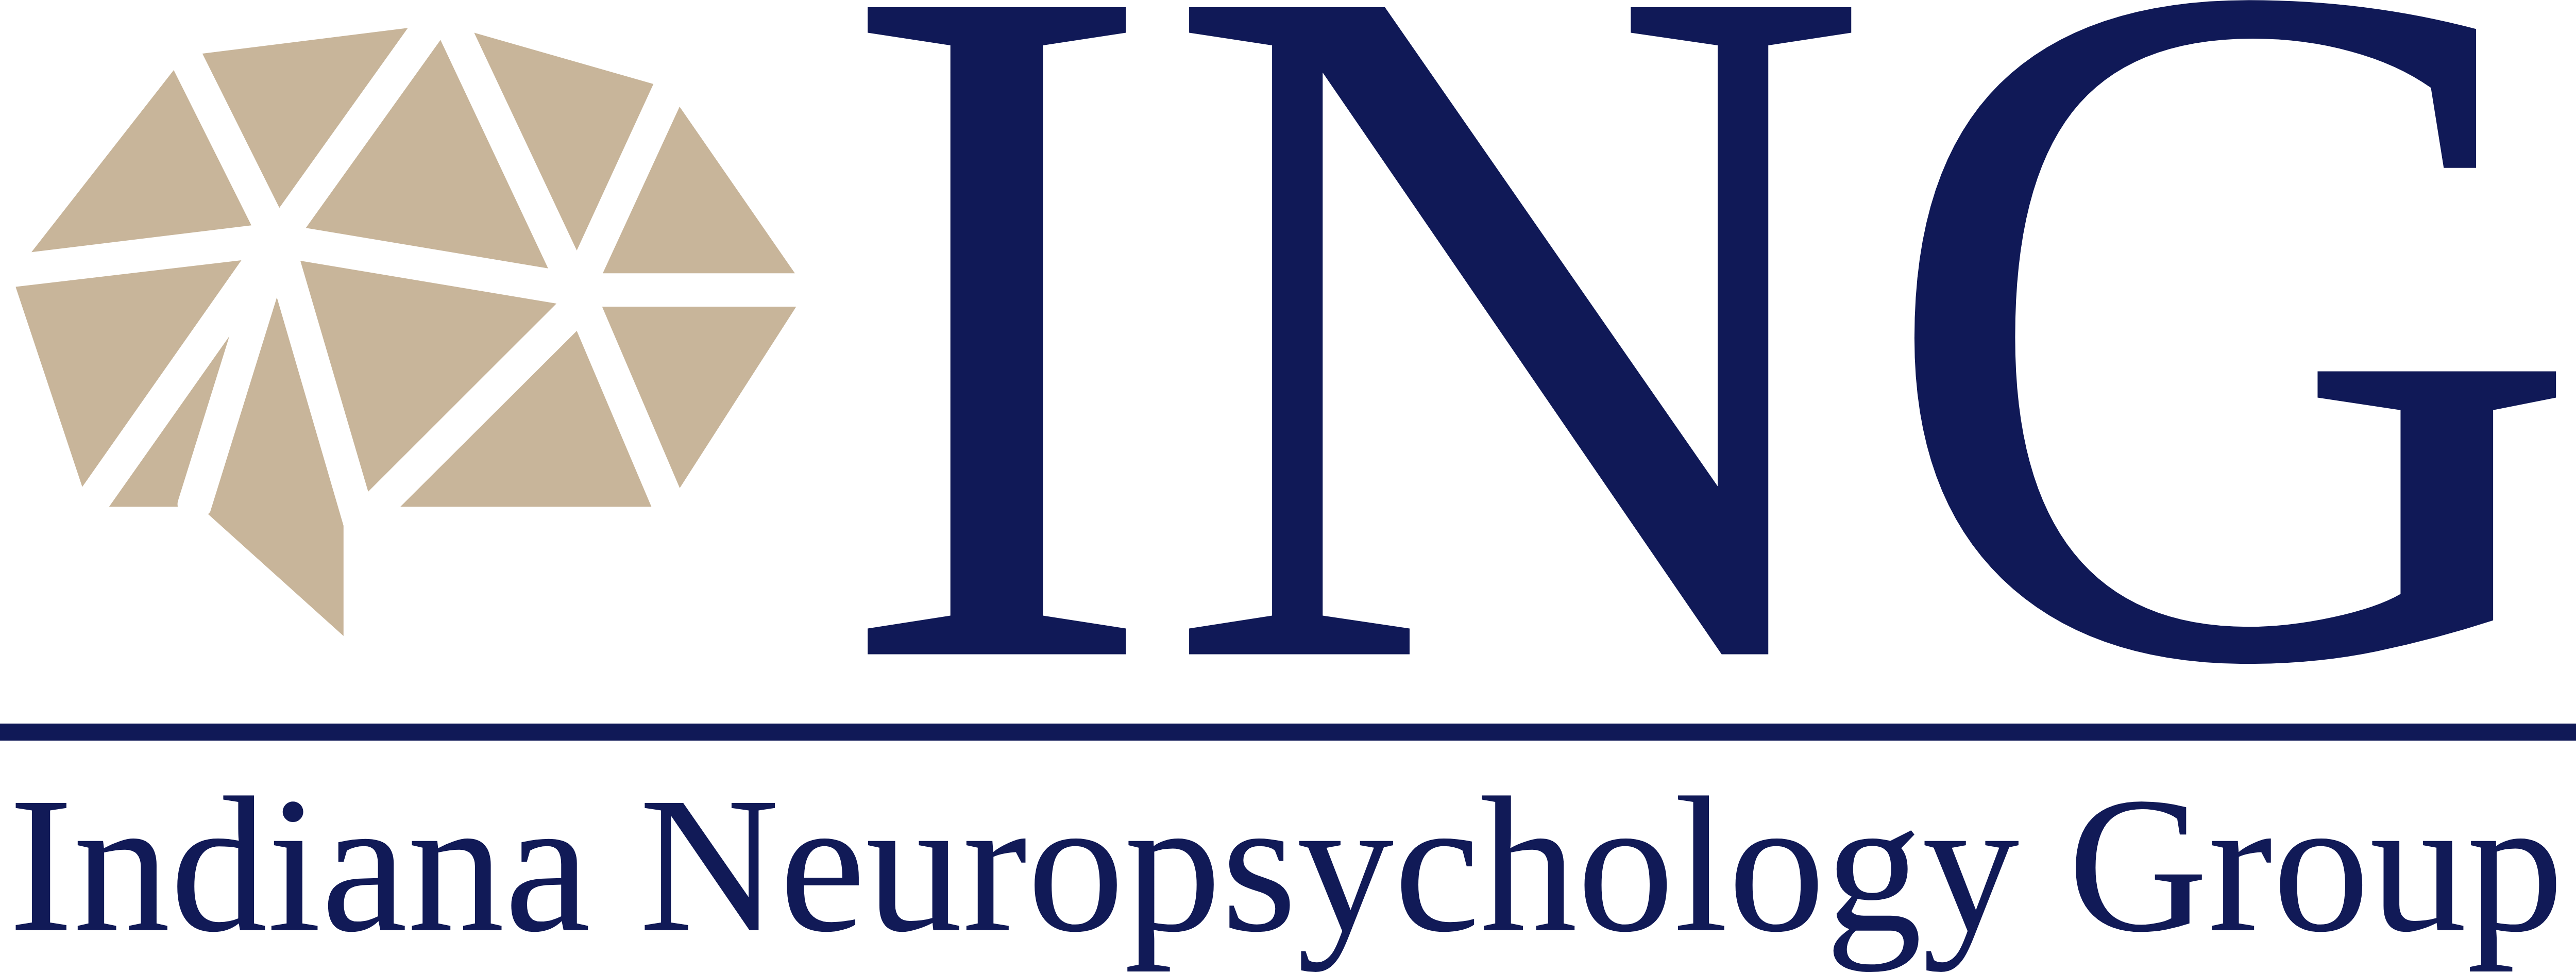 Indiana Neuropsychology Group